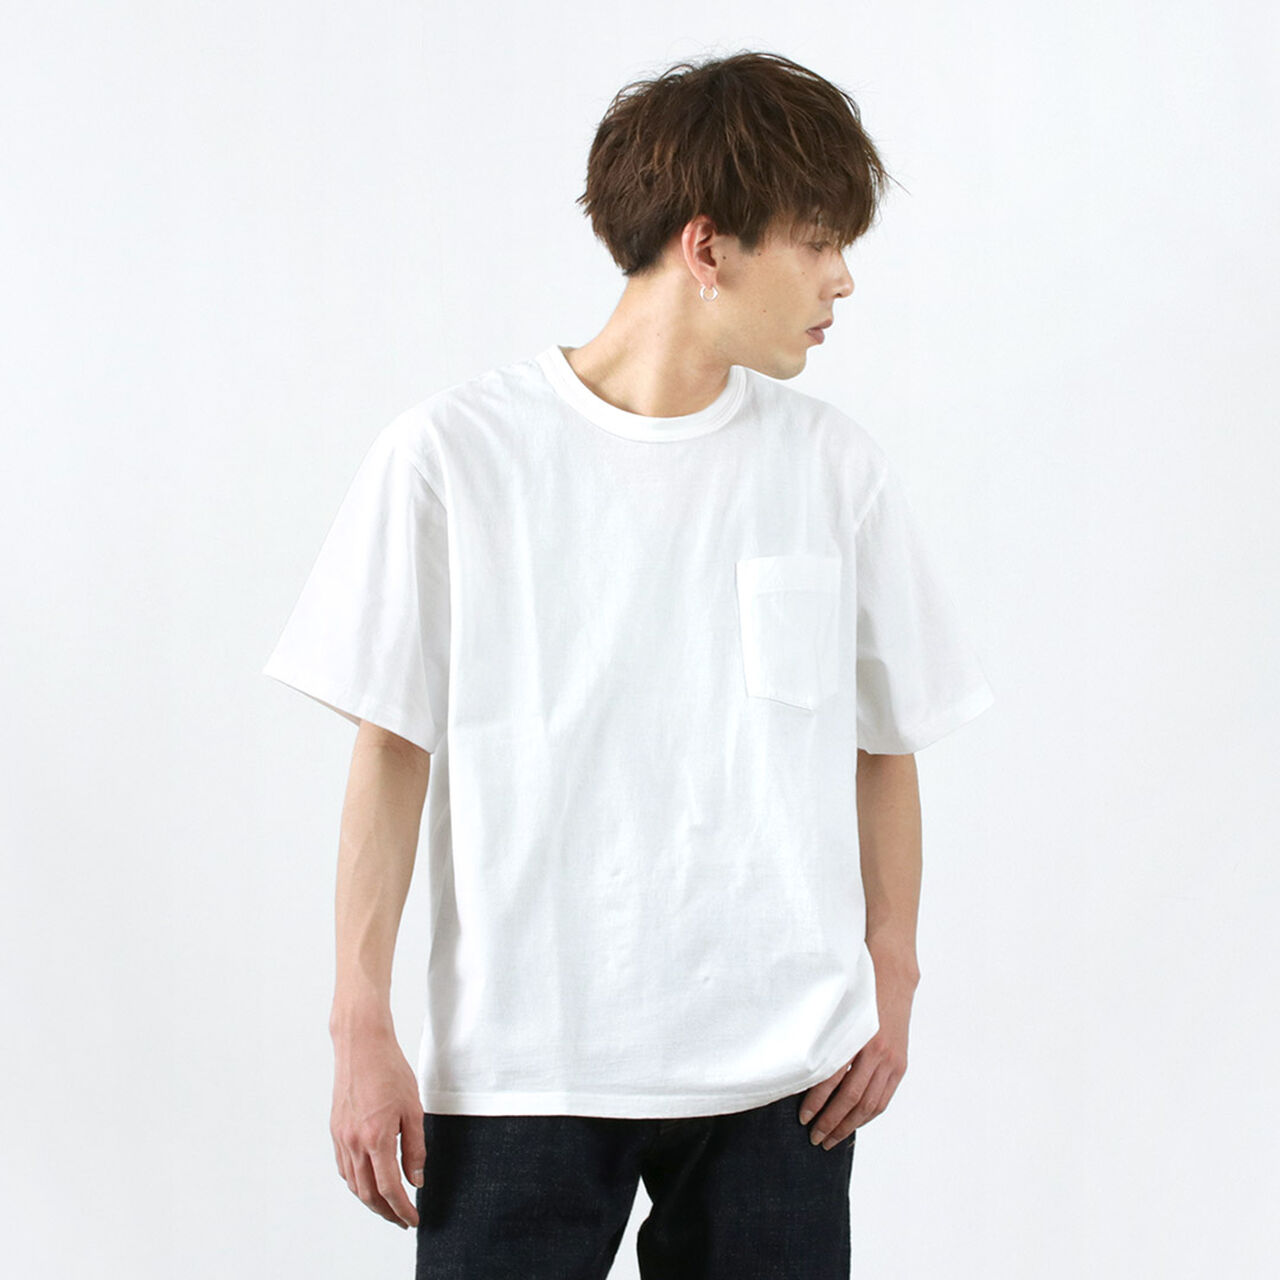 Tough Neck Short Sleeve T-Shirt,White, large image number 0